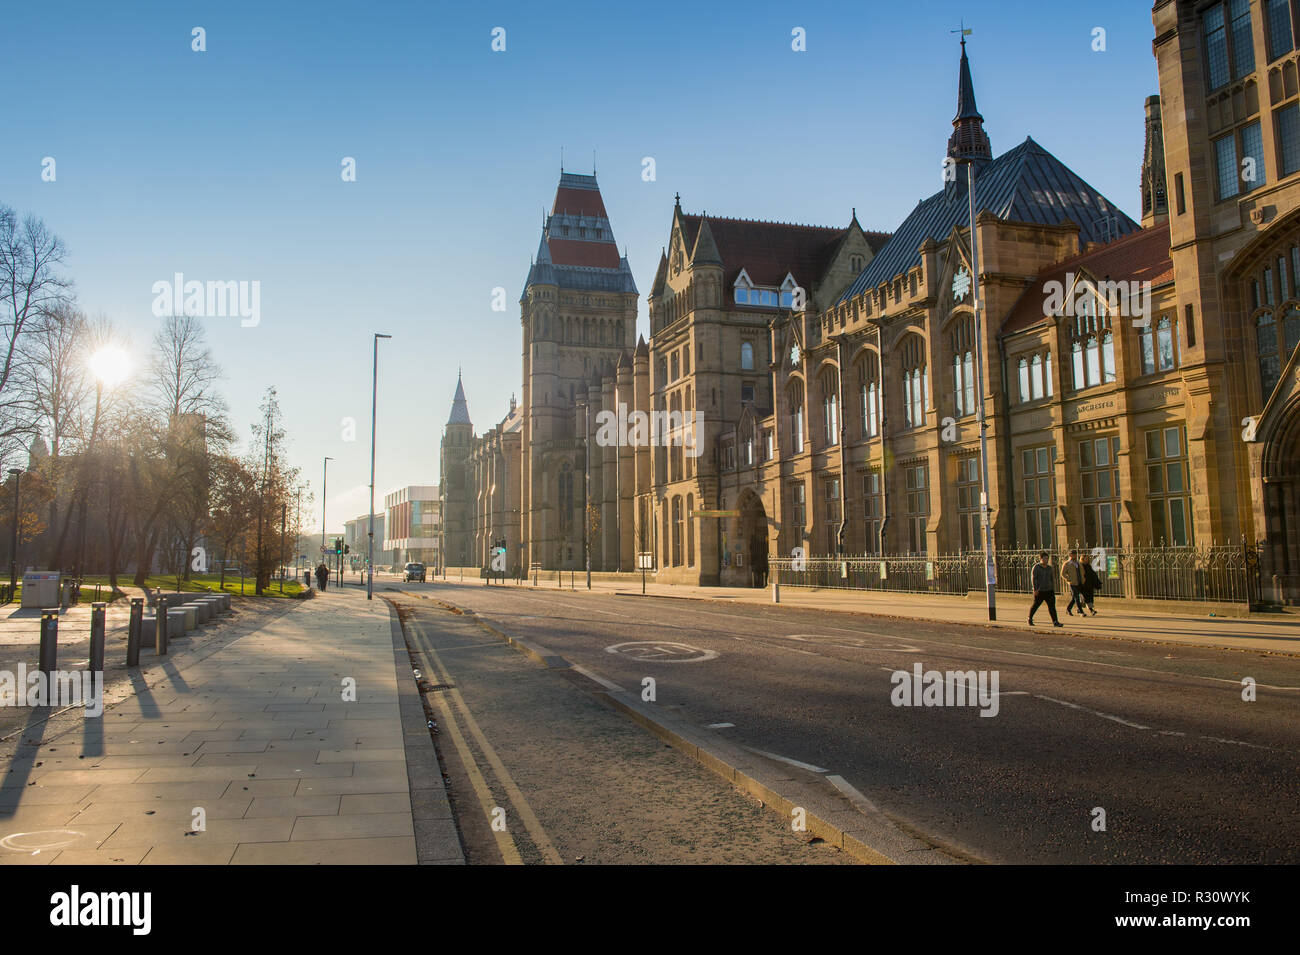 Le hall de l'Université Whitworth de Manchester par un beau matin d'hiver. Banque D'Images